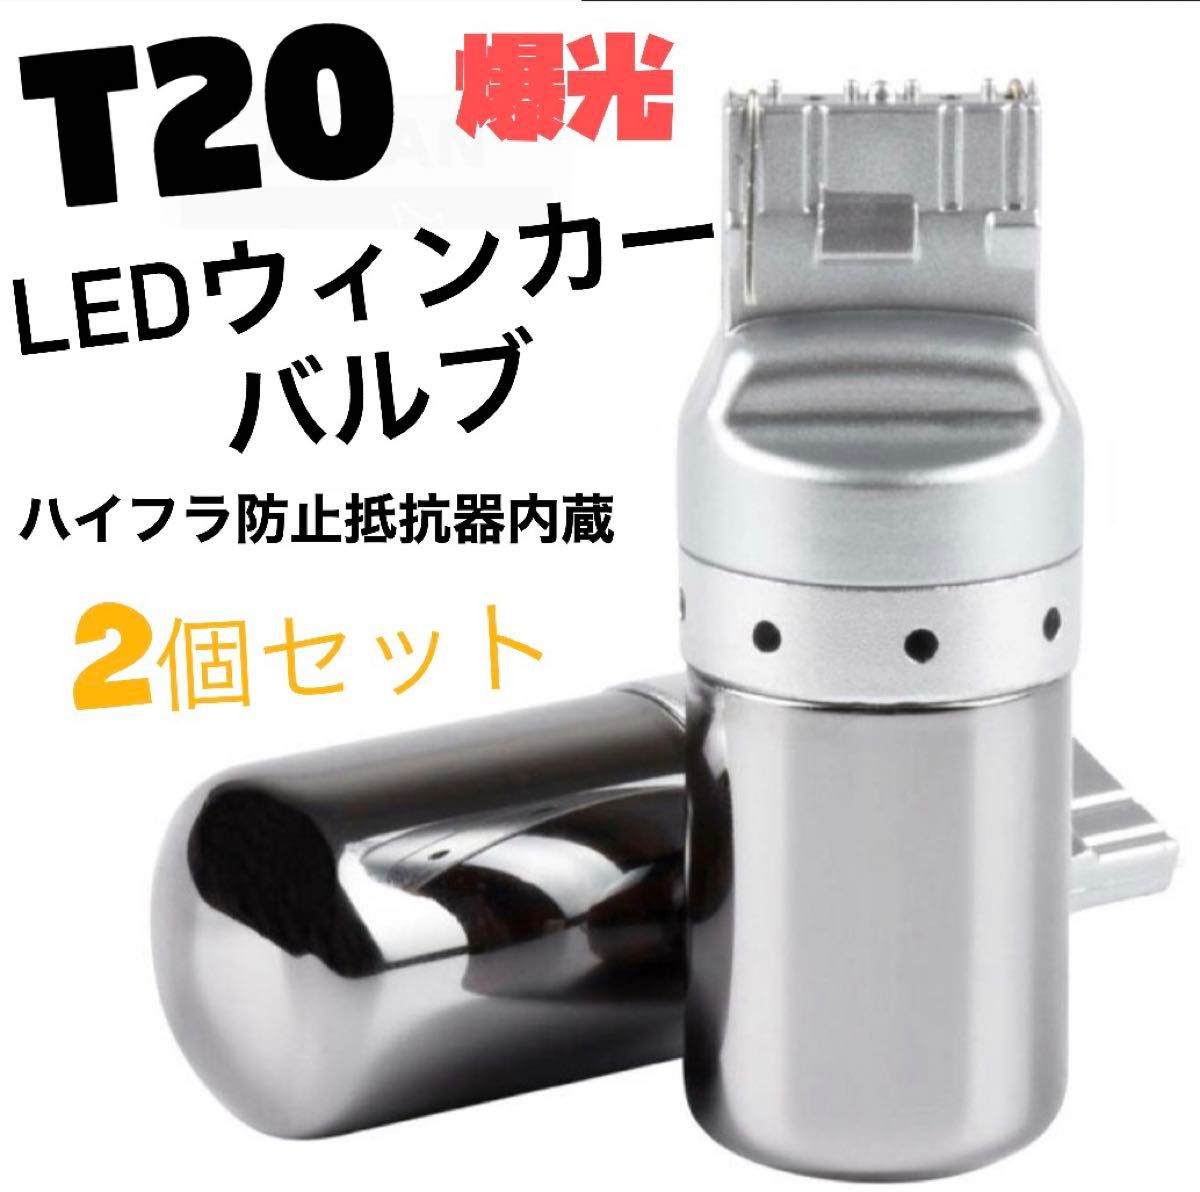 LED T20ステルスウインカーバルブ オレンジ色 ハイフラ防止抵抗内蔵CREE